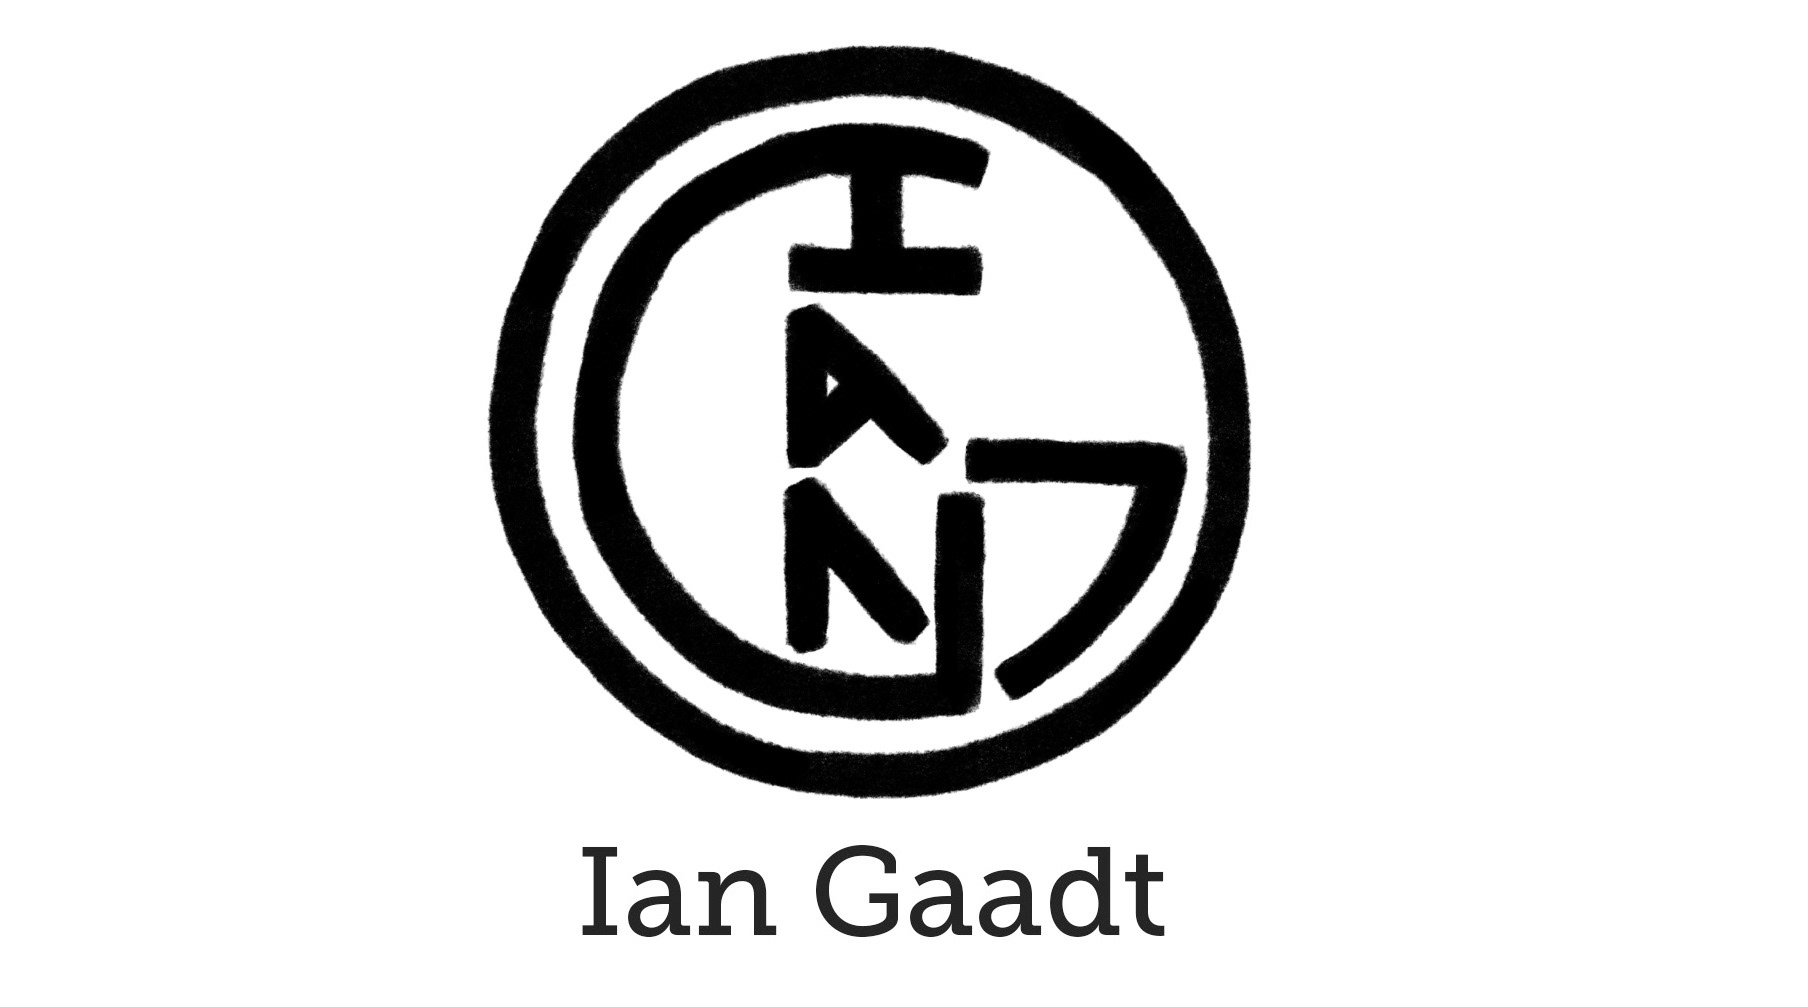 Ian Gaadt